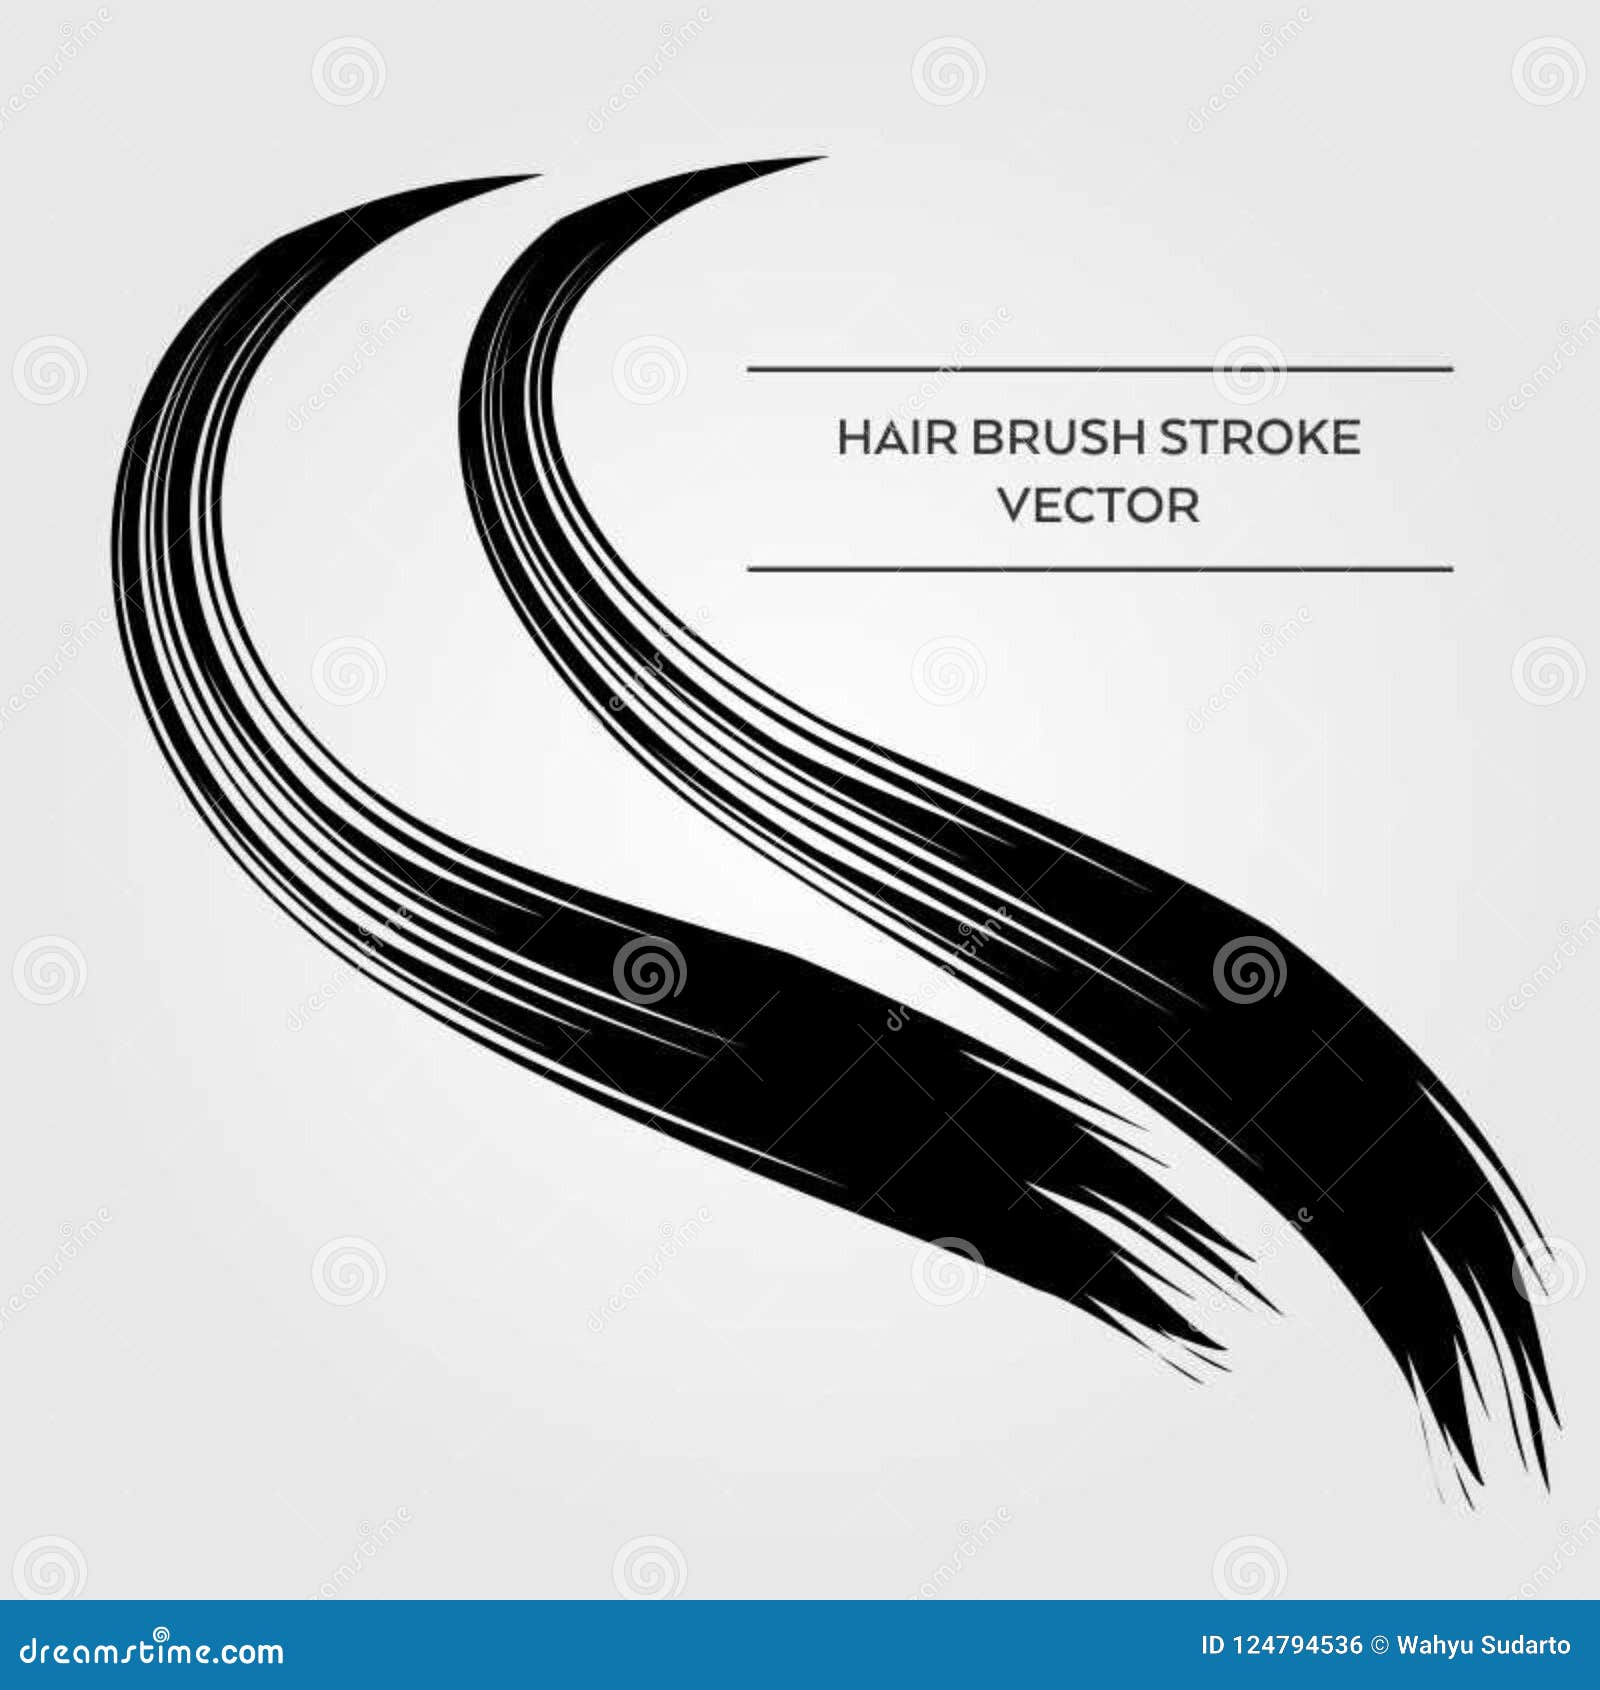 Line hair brush vector stock illustration. Illustration of blend - 124794536